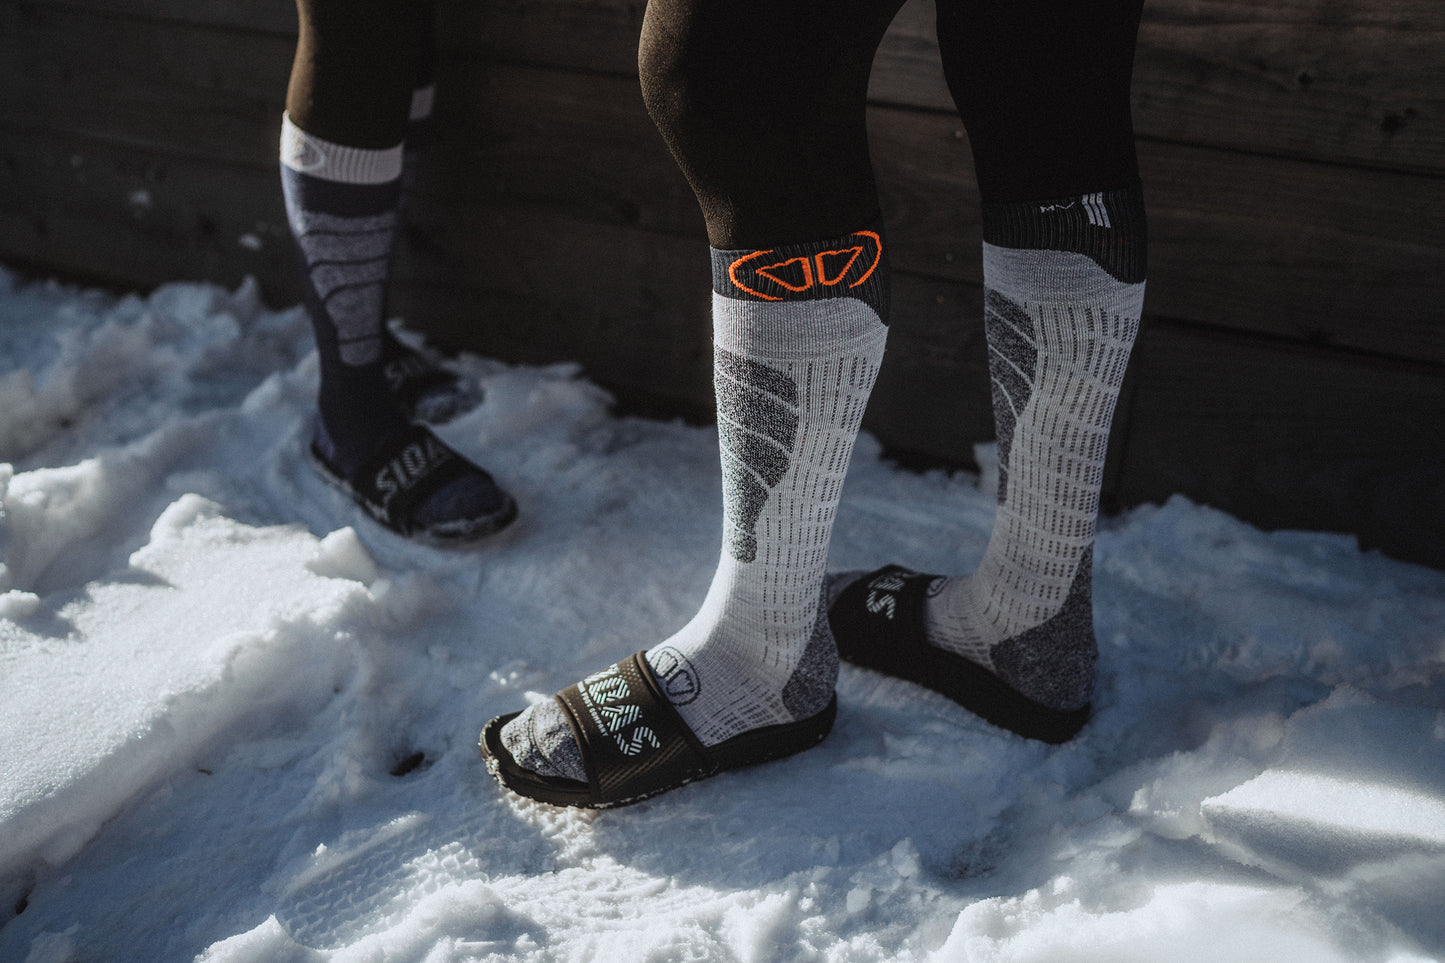 Sidas Ski Merino Anatomical Ski Socks Being Worn